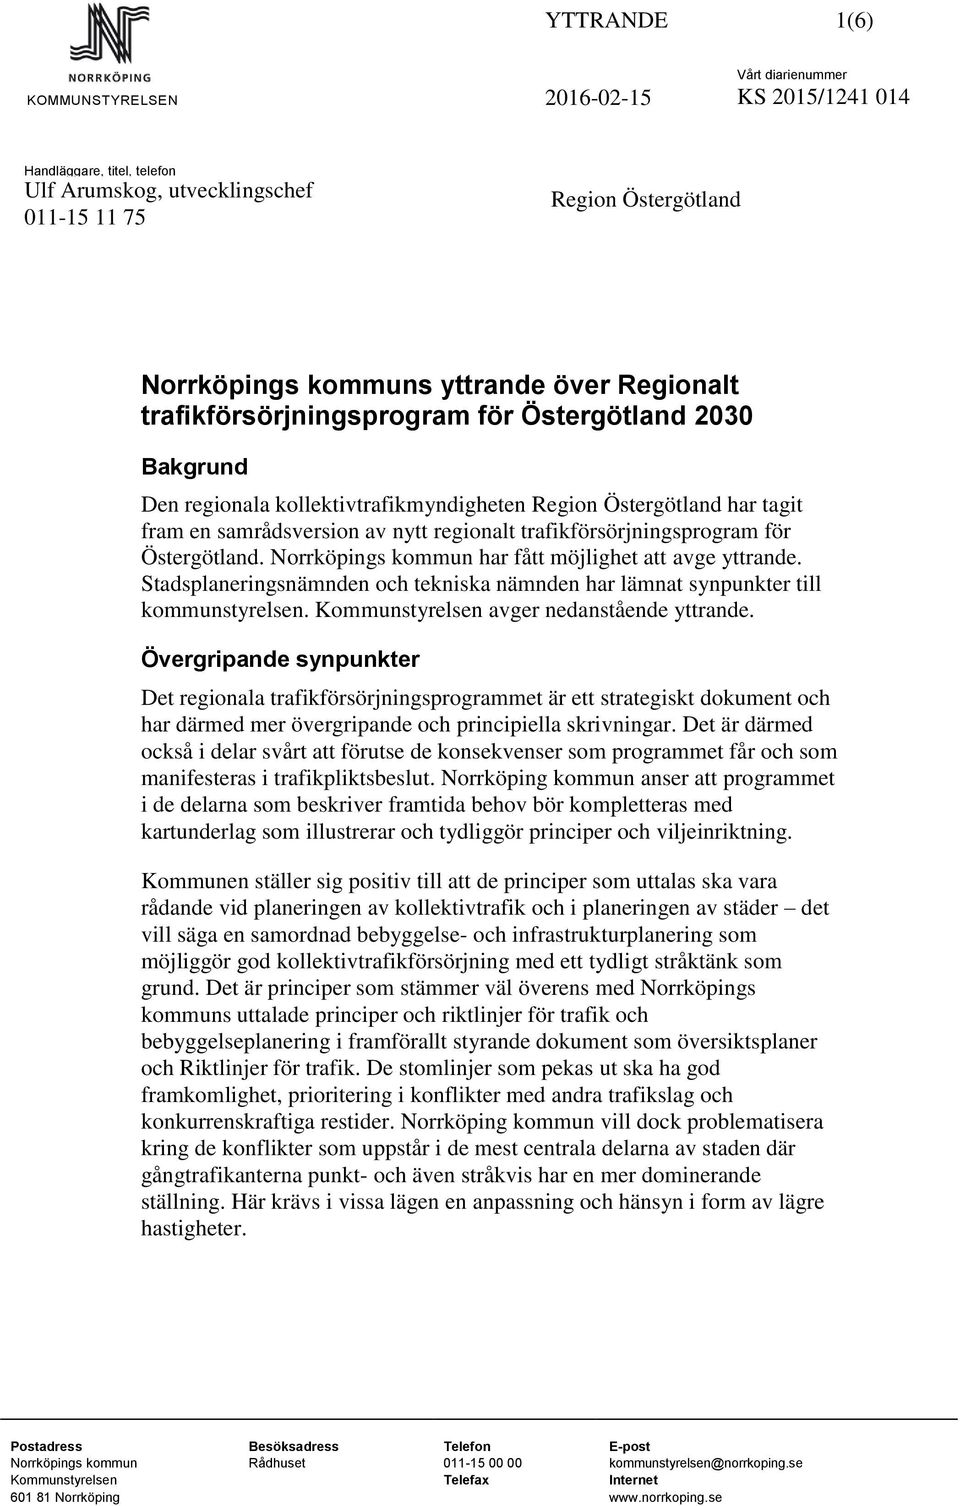 Östergötland. Norrköpings kommun har fått möjlighet att avge yttrande. Stadsplaneringsnämnden och tekniska nämnden har lämnat synpunkter till kommunstyrelsen.